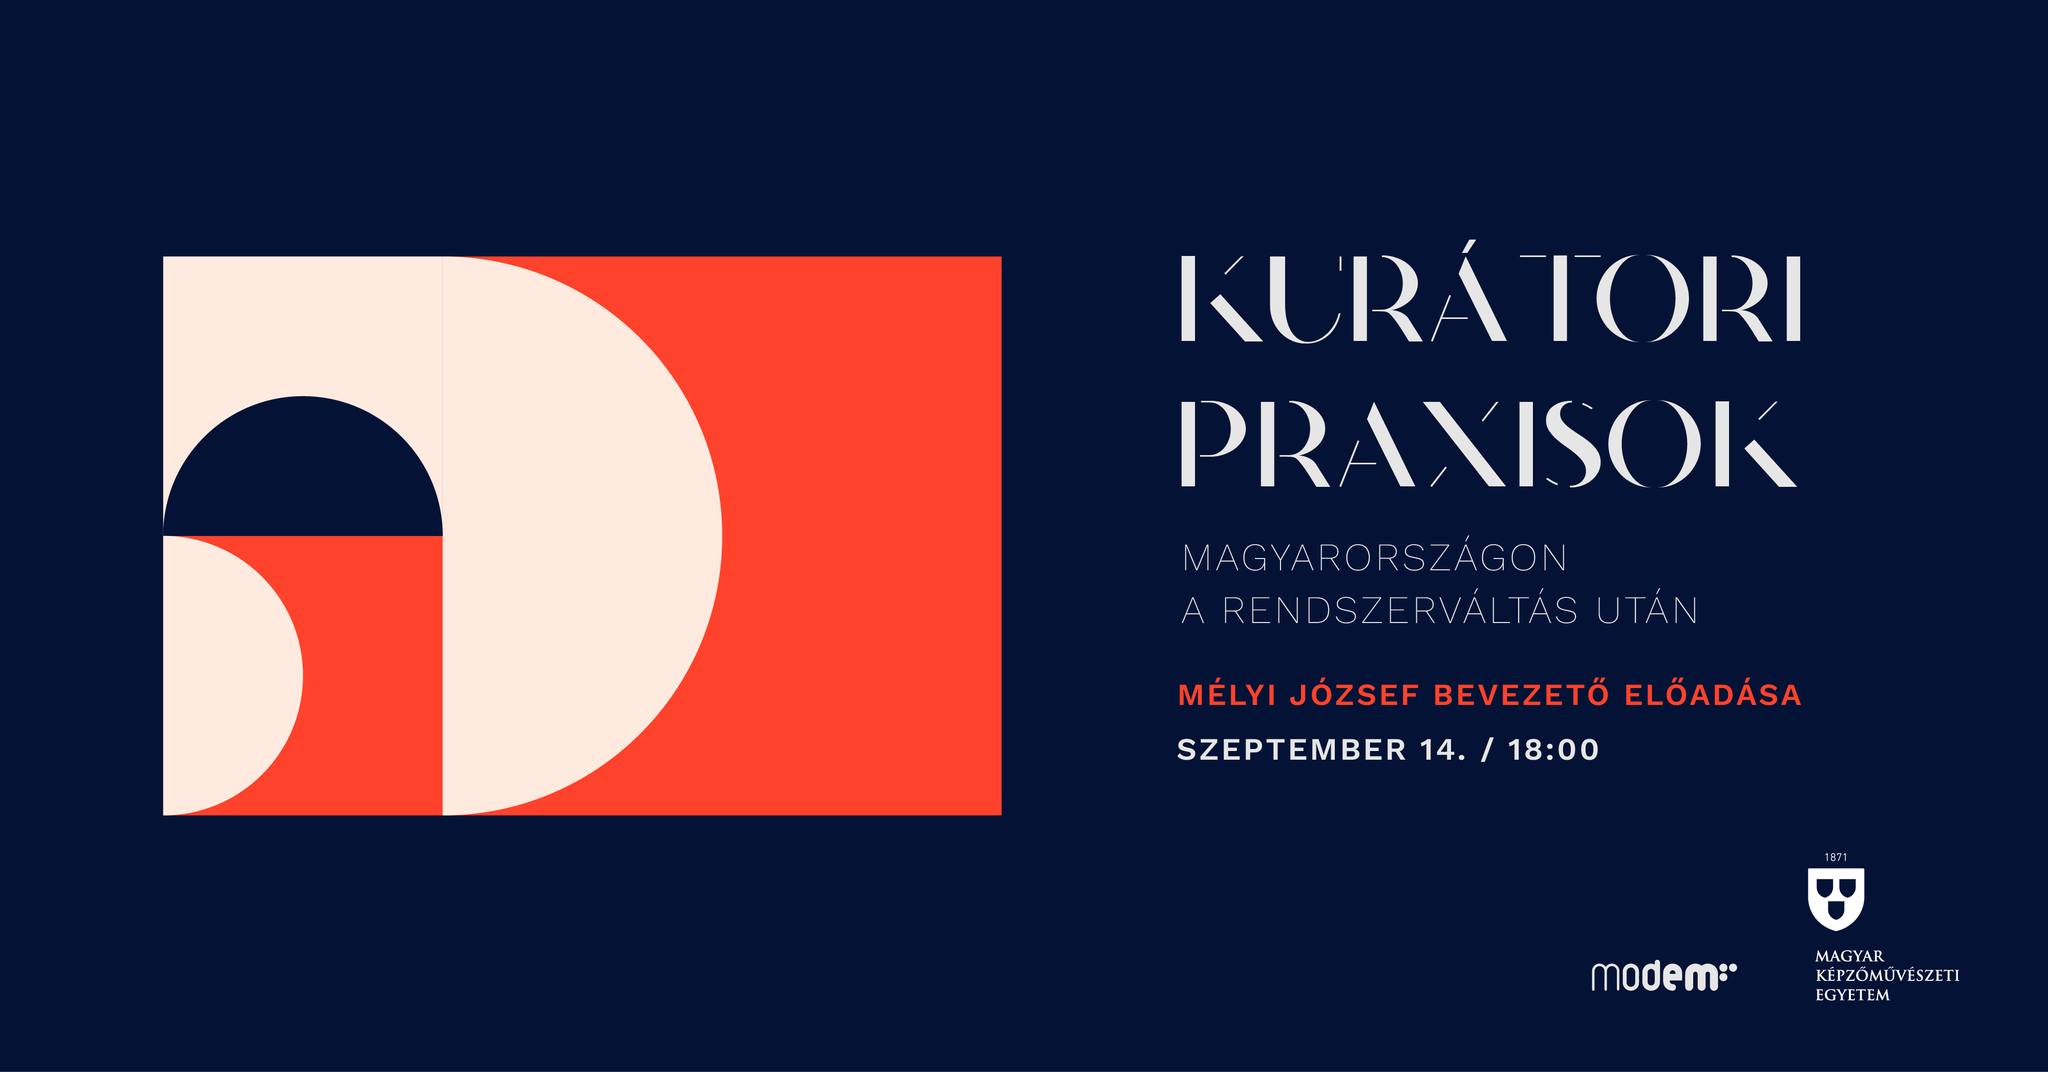 Kurátori praxisok Magyarországon a rendszerváltás után